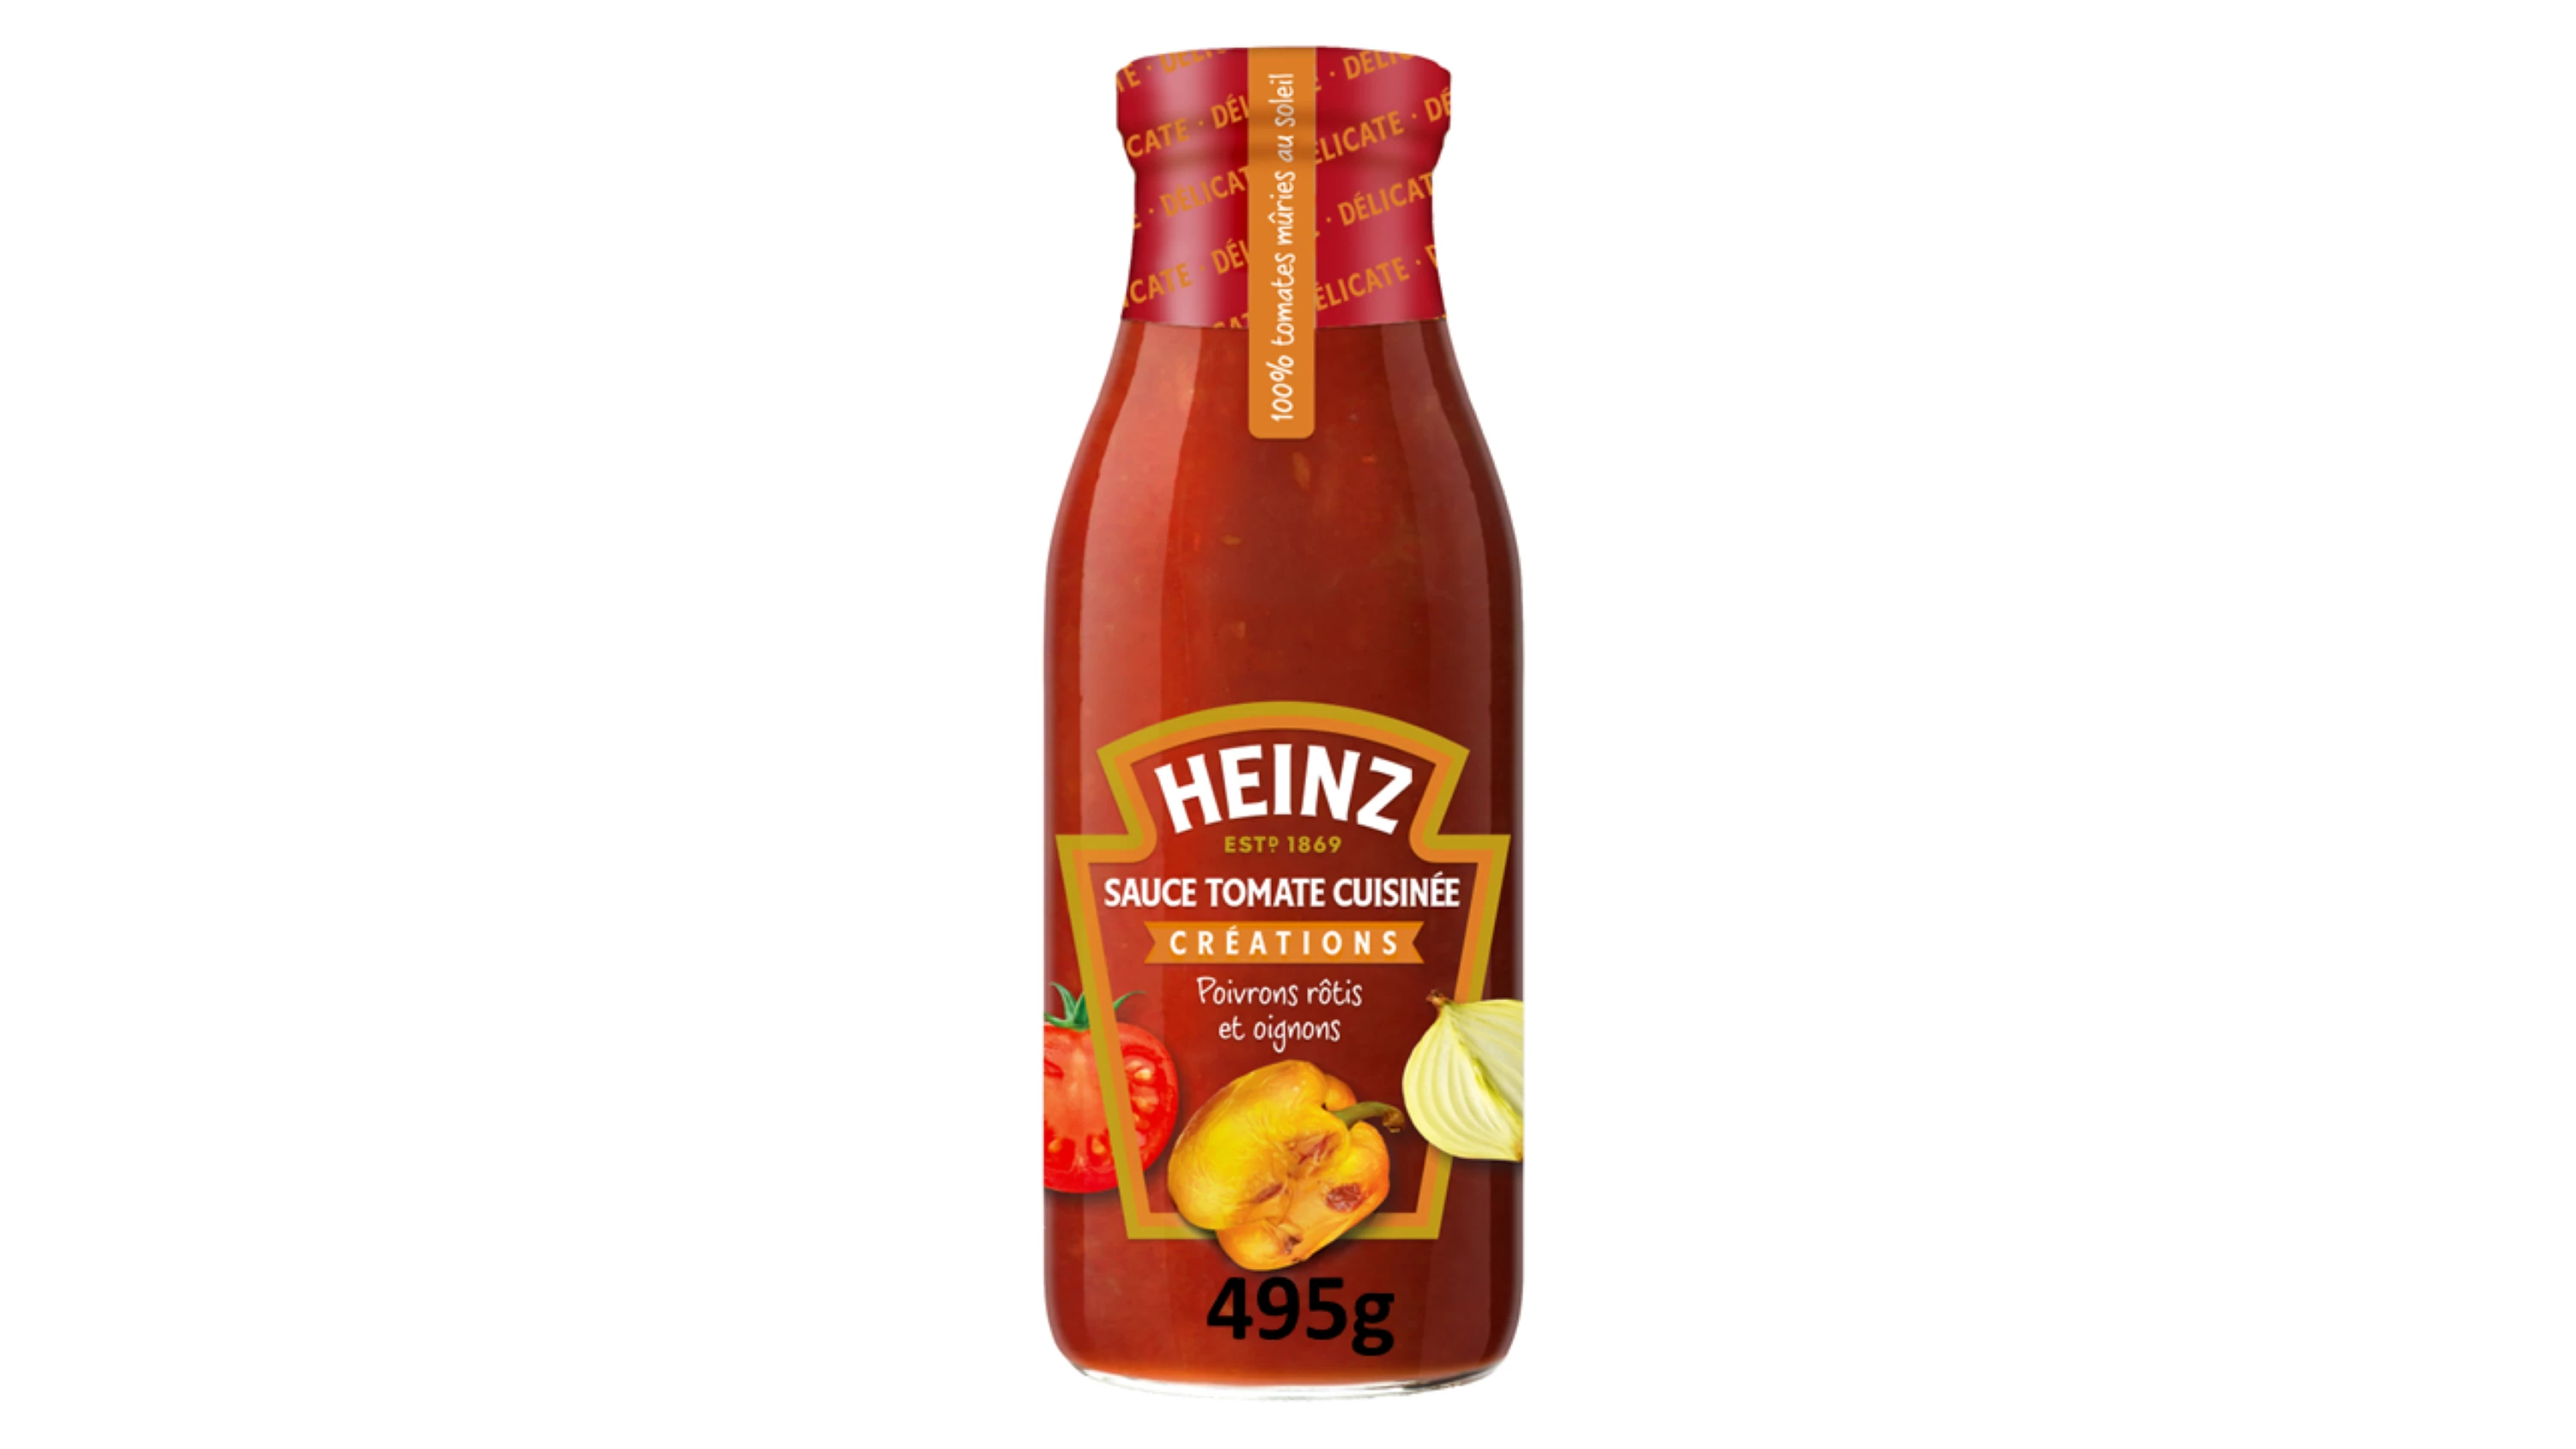 Sauce tomate Cuisinée poivrons rôtis et Oignons; 495g- HEINZ